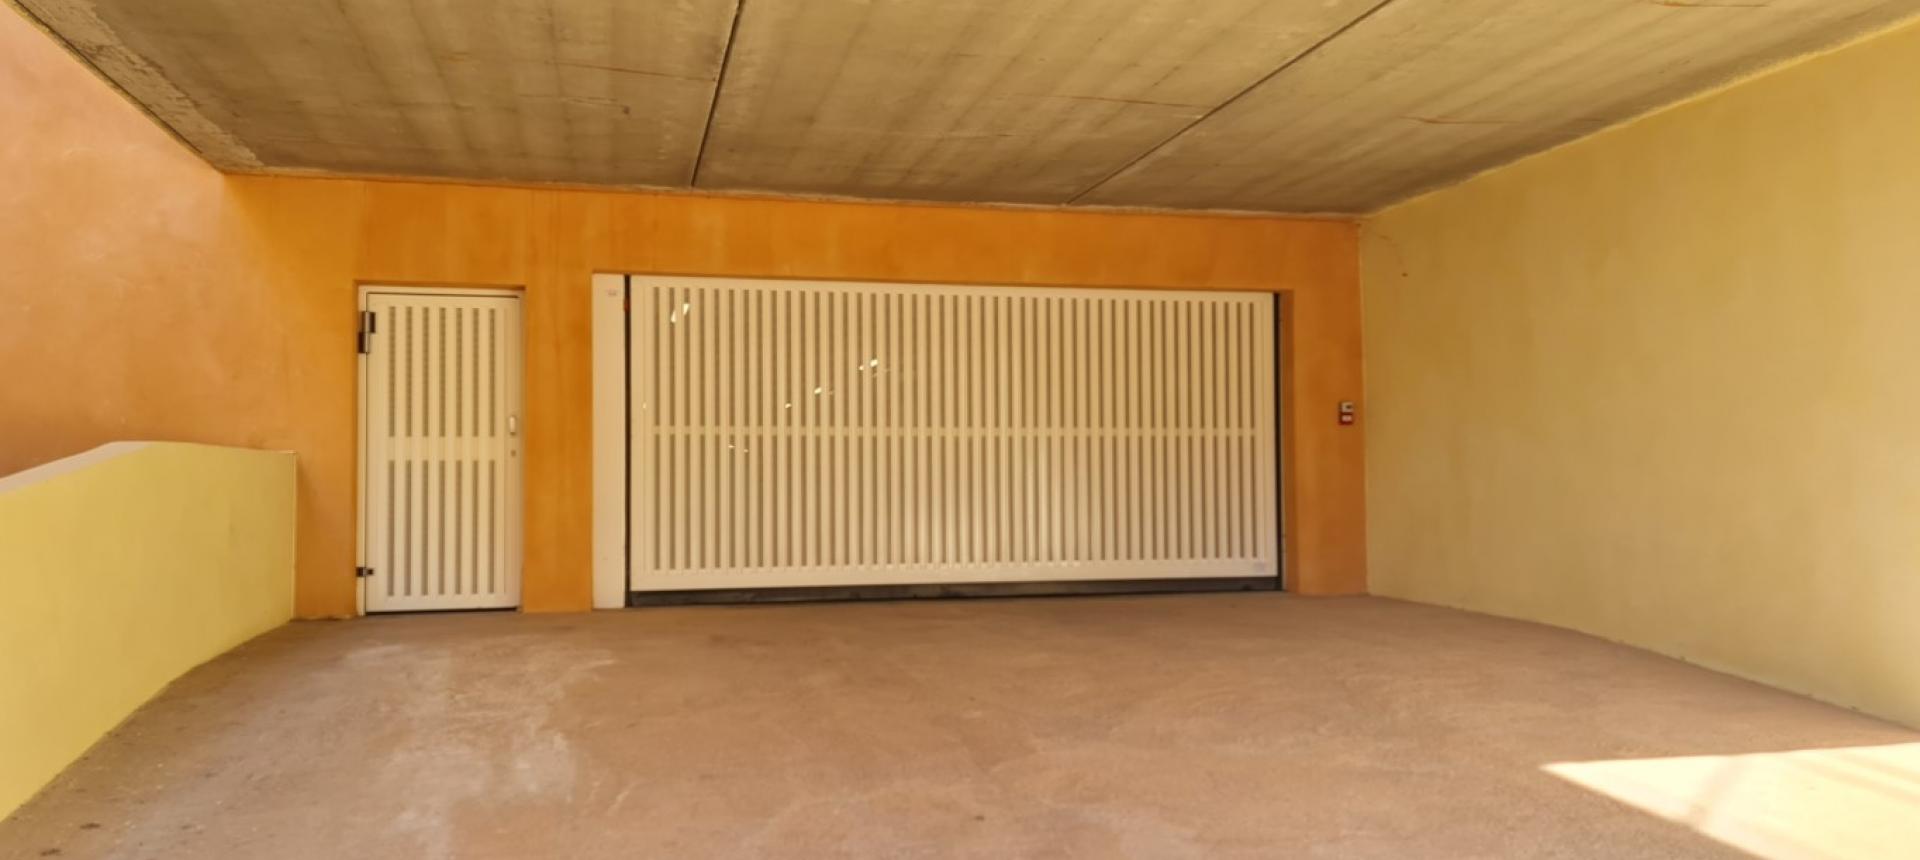 Achat garage à Santa Lina à Ajaccio - Résidence Panoramique